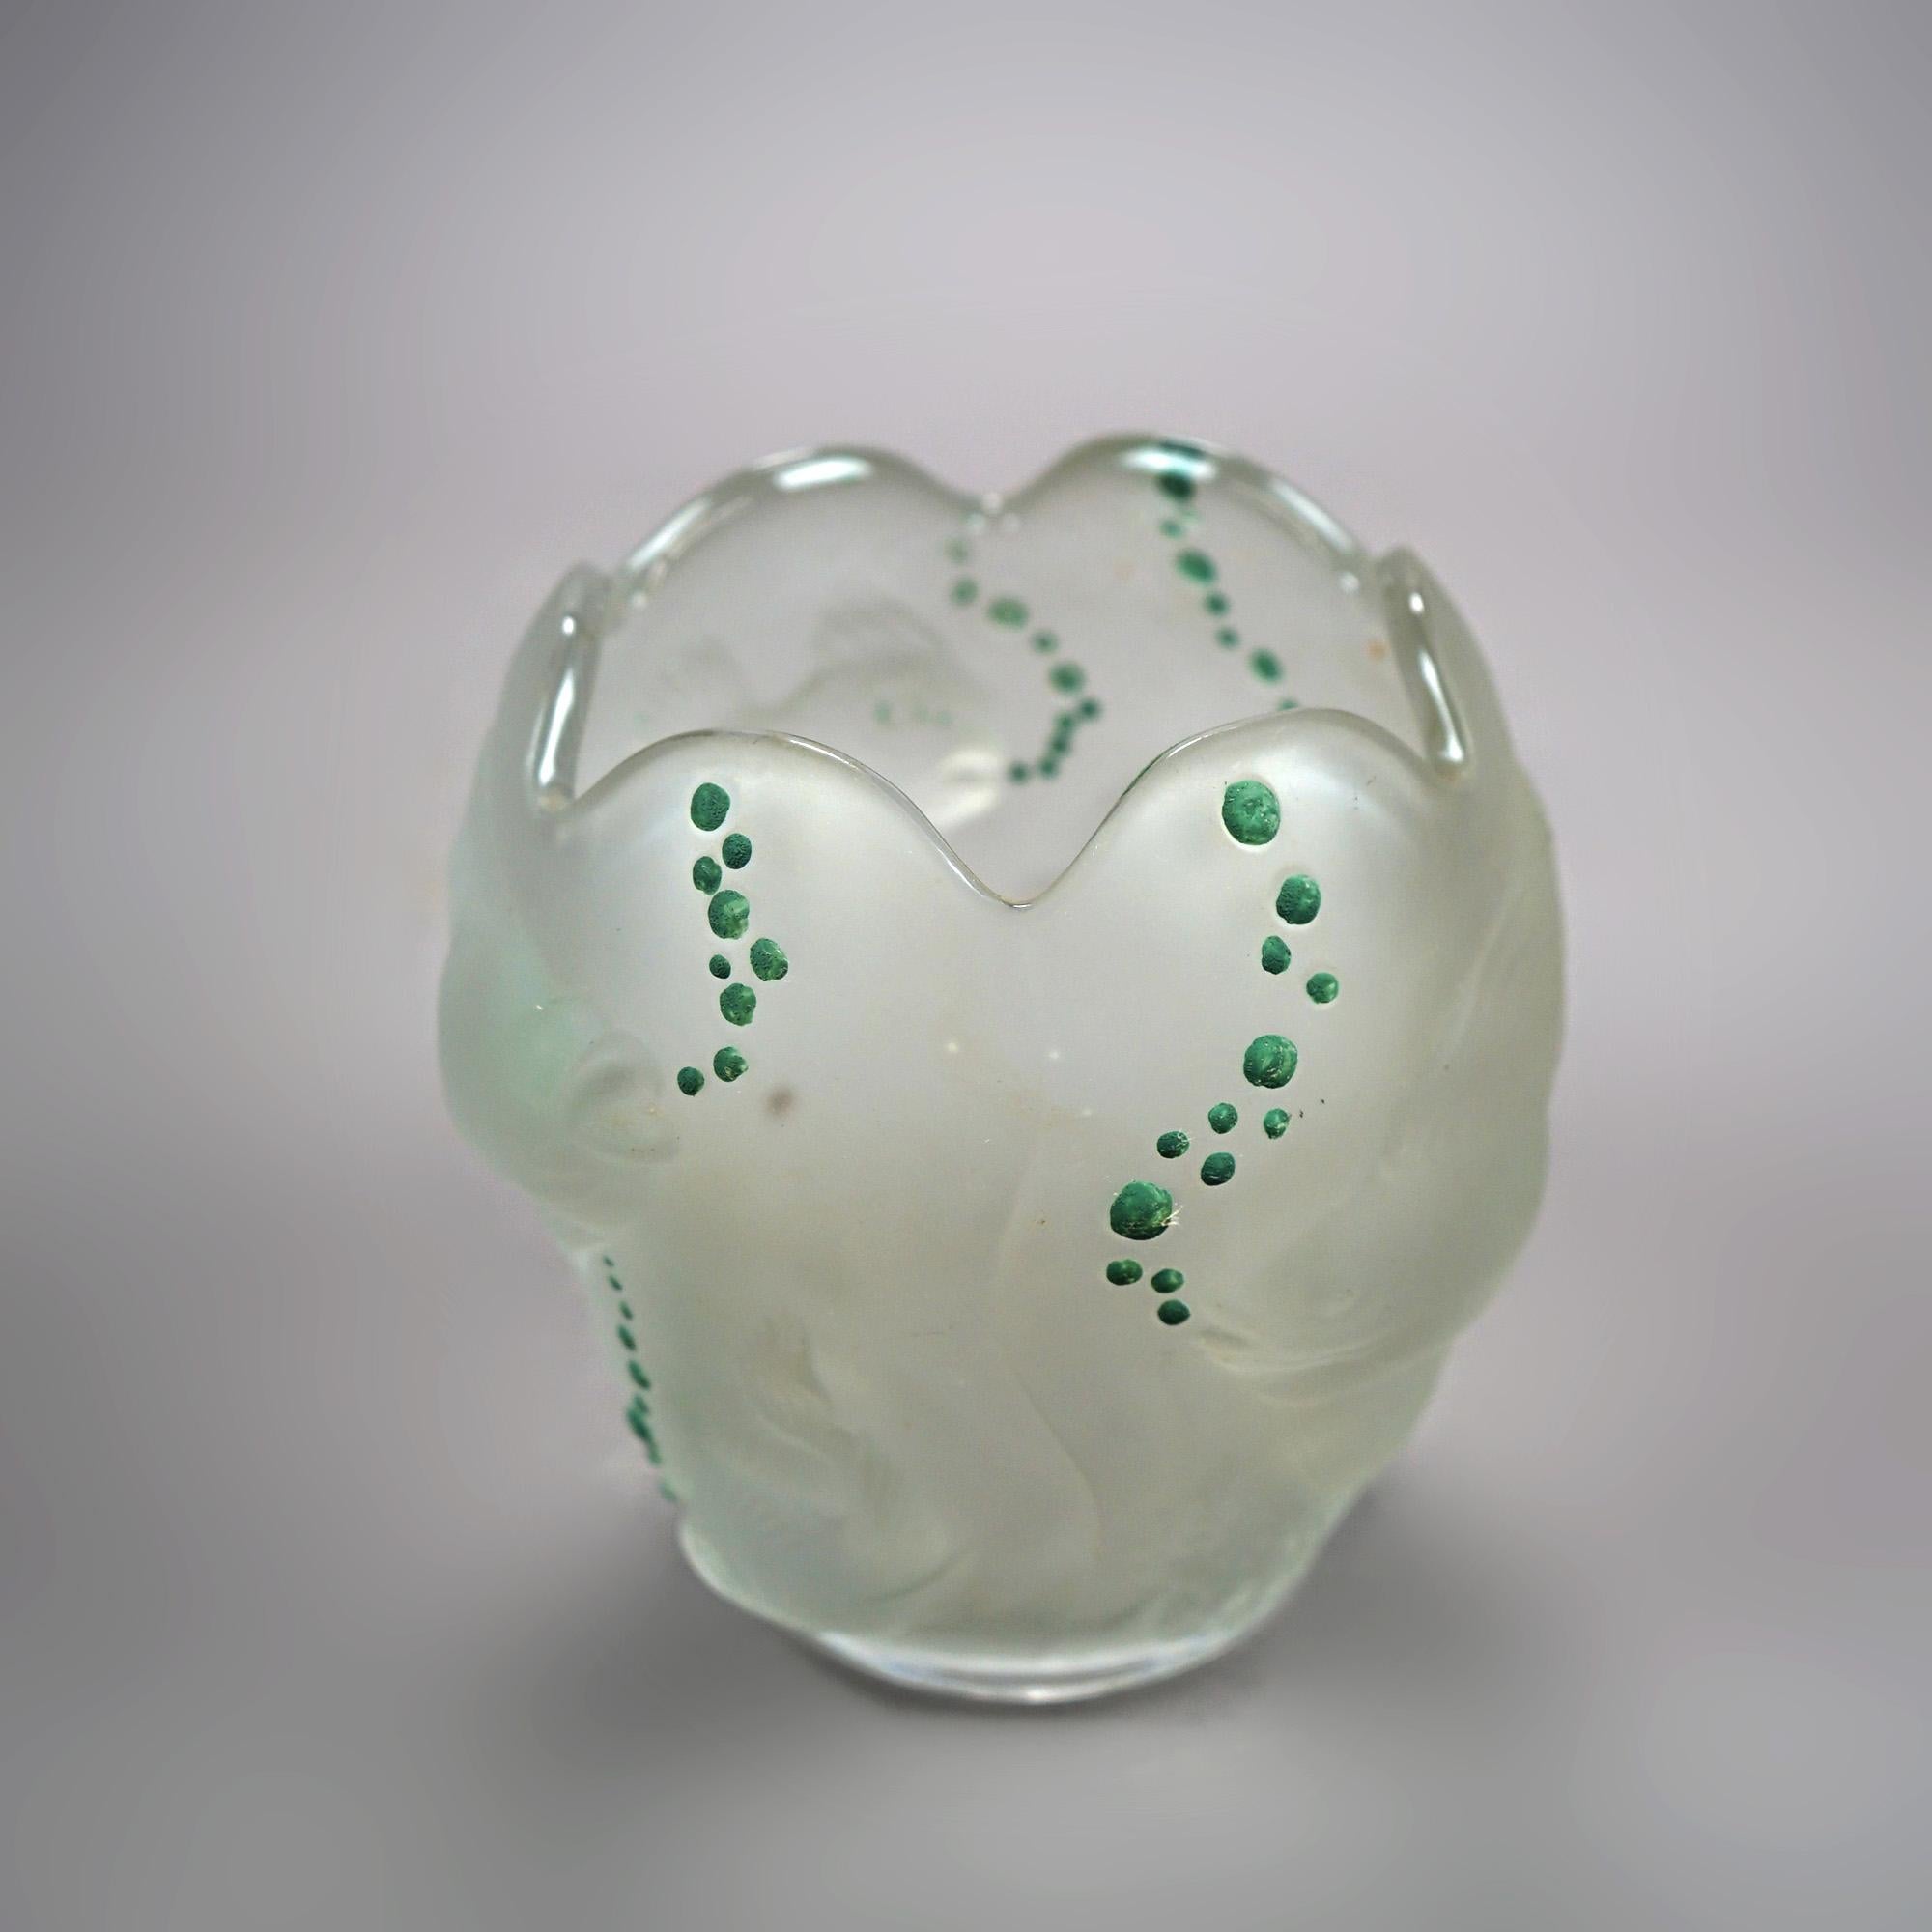 Un vase figuré à la manière de Lalique offre en relief une scène sous-marine avec des poissons et des bulles en émail appliqué, non signé, 20e siècle.

Mesures- 6,25''H x 6,25''W x 6,25''D.